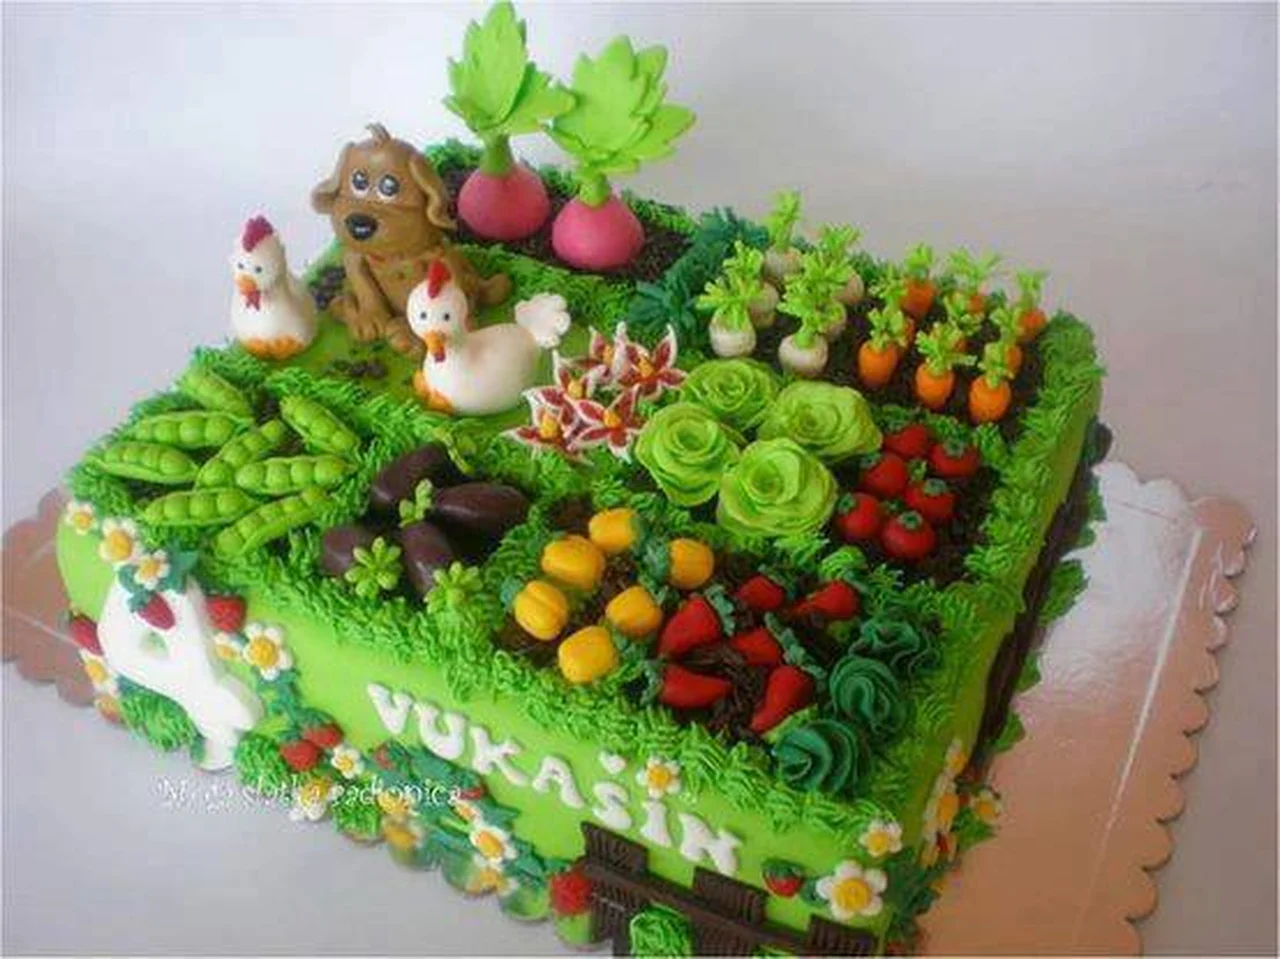 Piękny tort